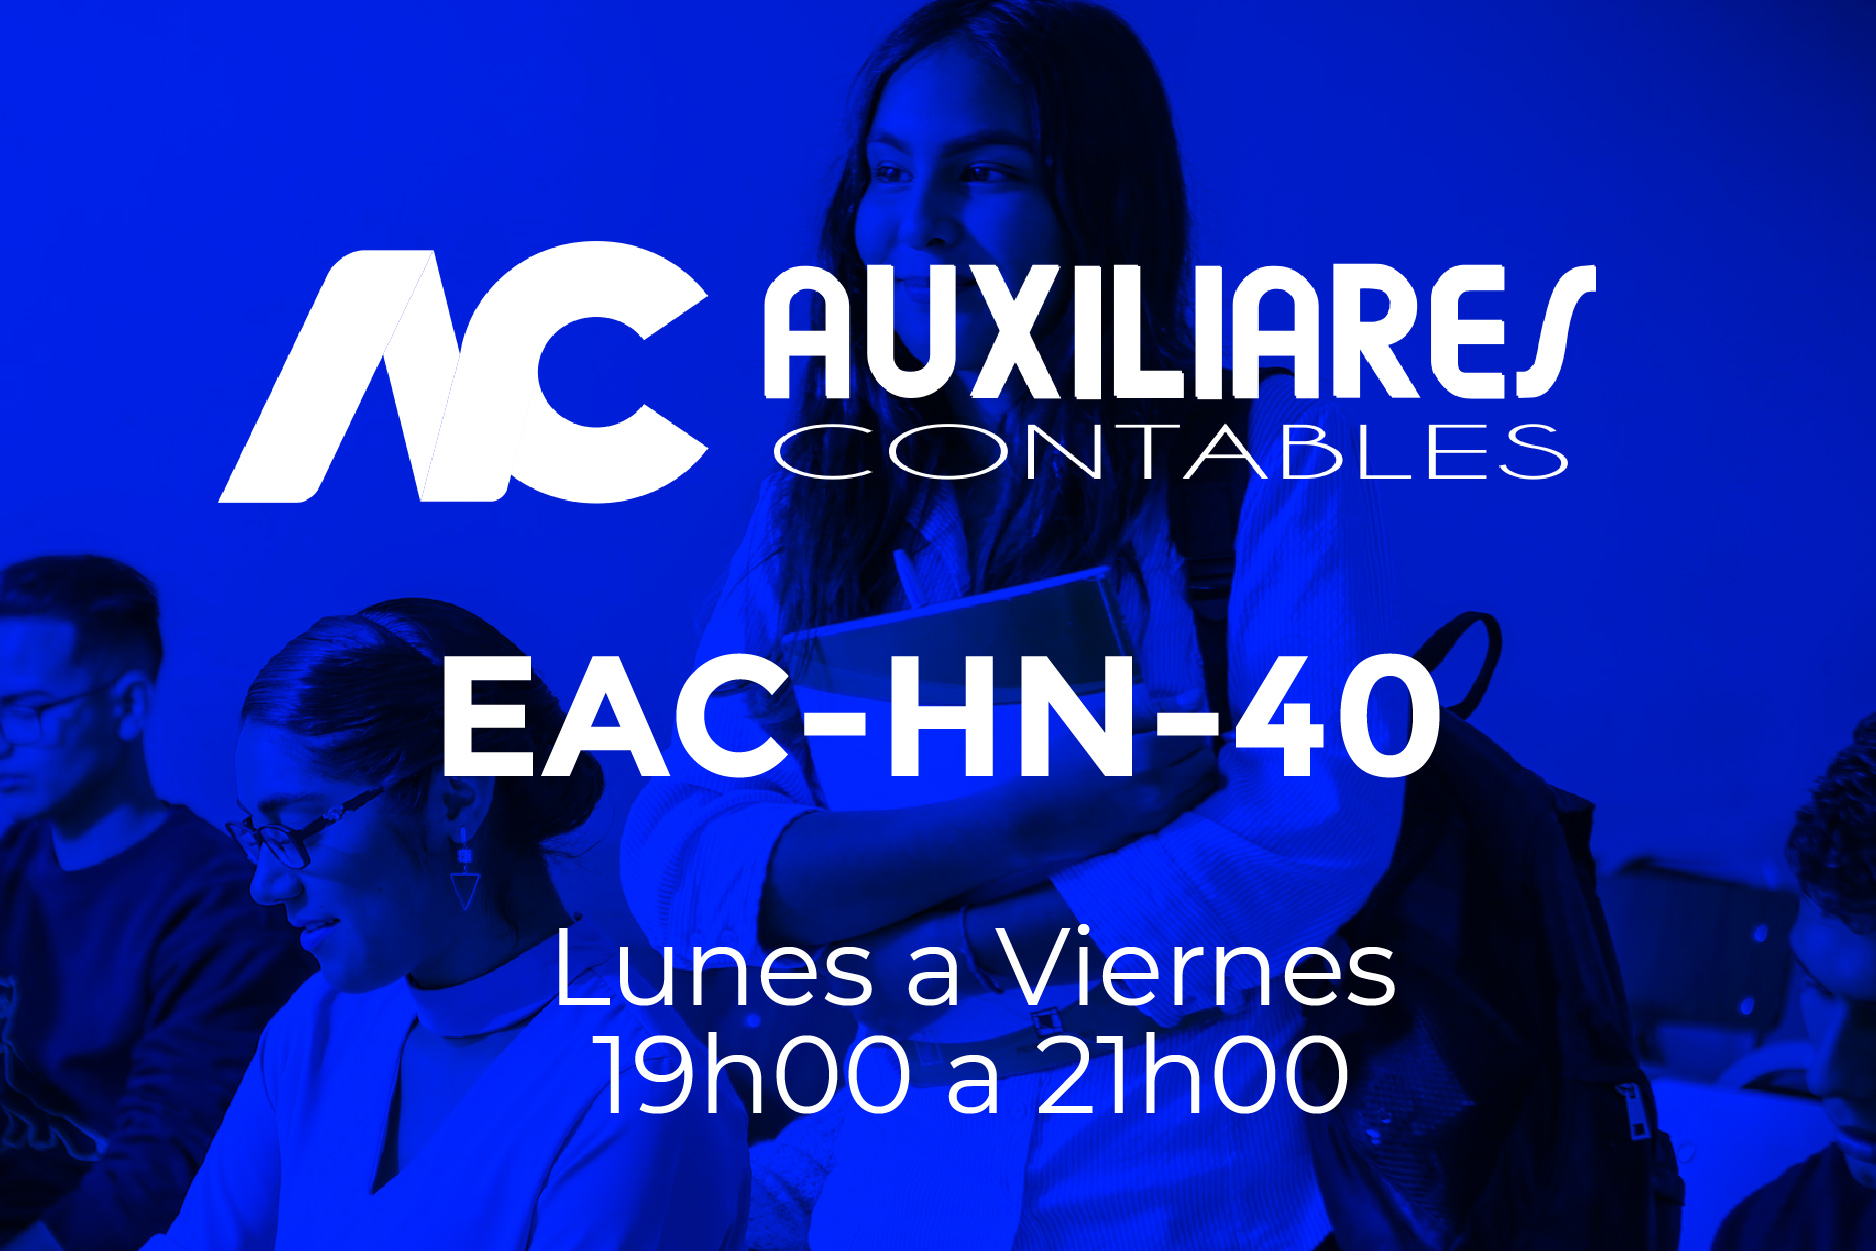 40 - AUXILIARES CONTABLES - LUNES A VIERNES - 19:00 A 21:00